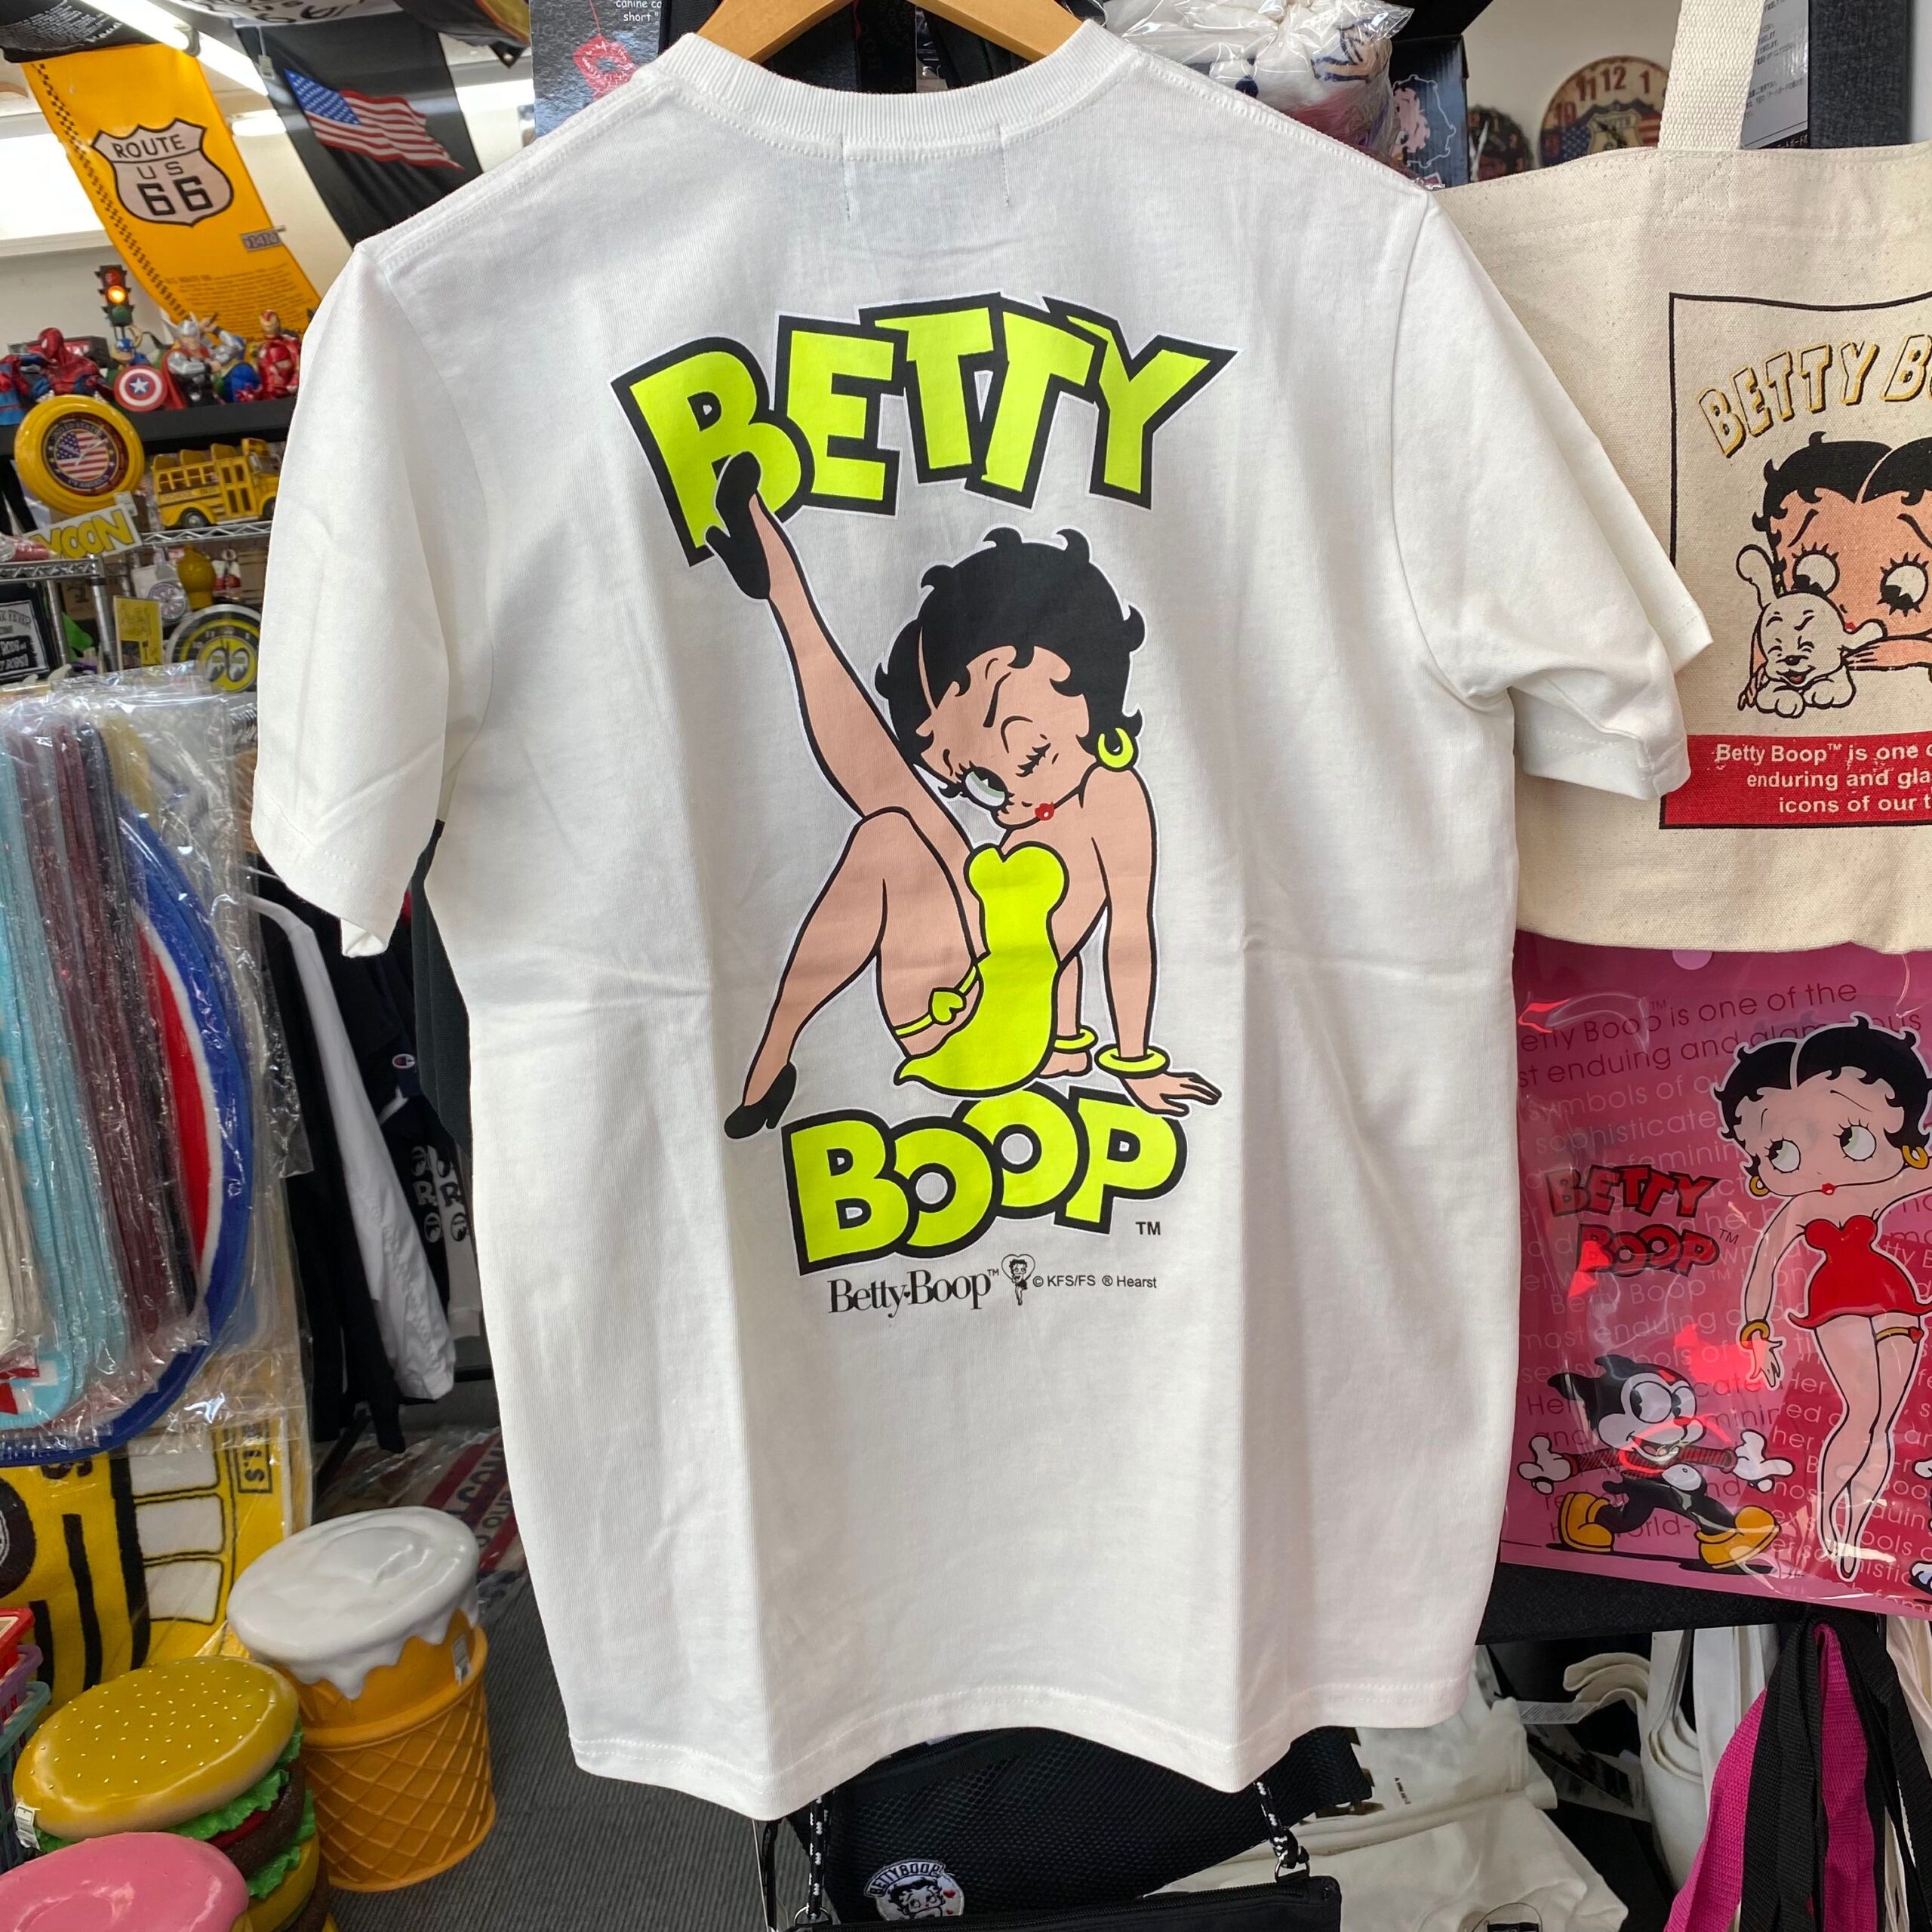 【BETTY BOOP】 「Leg Up Betty 」ネオンカラープリントTシャツ - EIGHT | アパレル・雑貨・自動車用品から